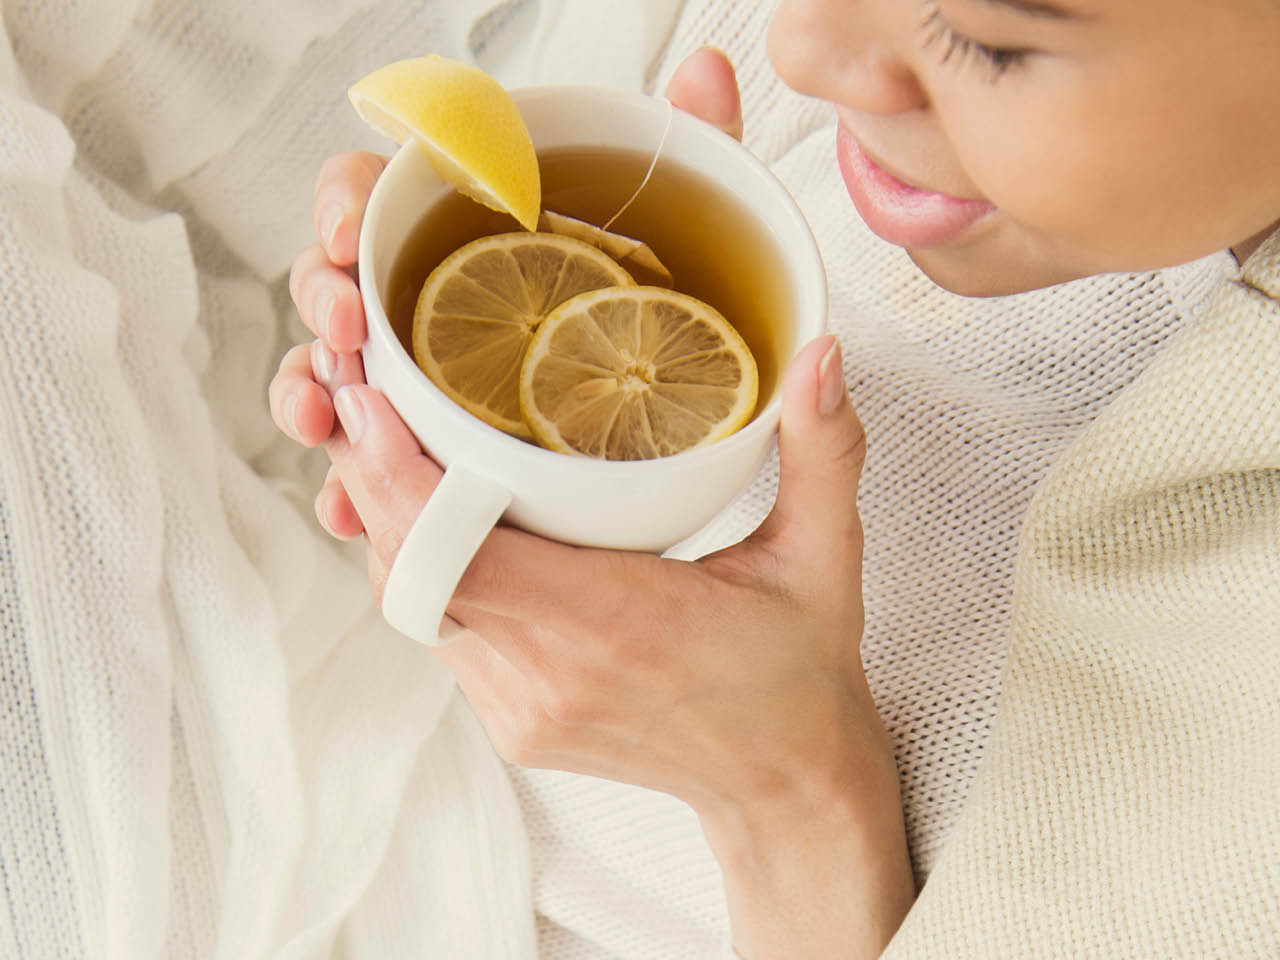 remedios caseros amigdalitis limón, miel y tomillo